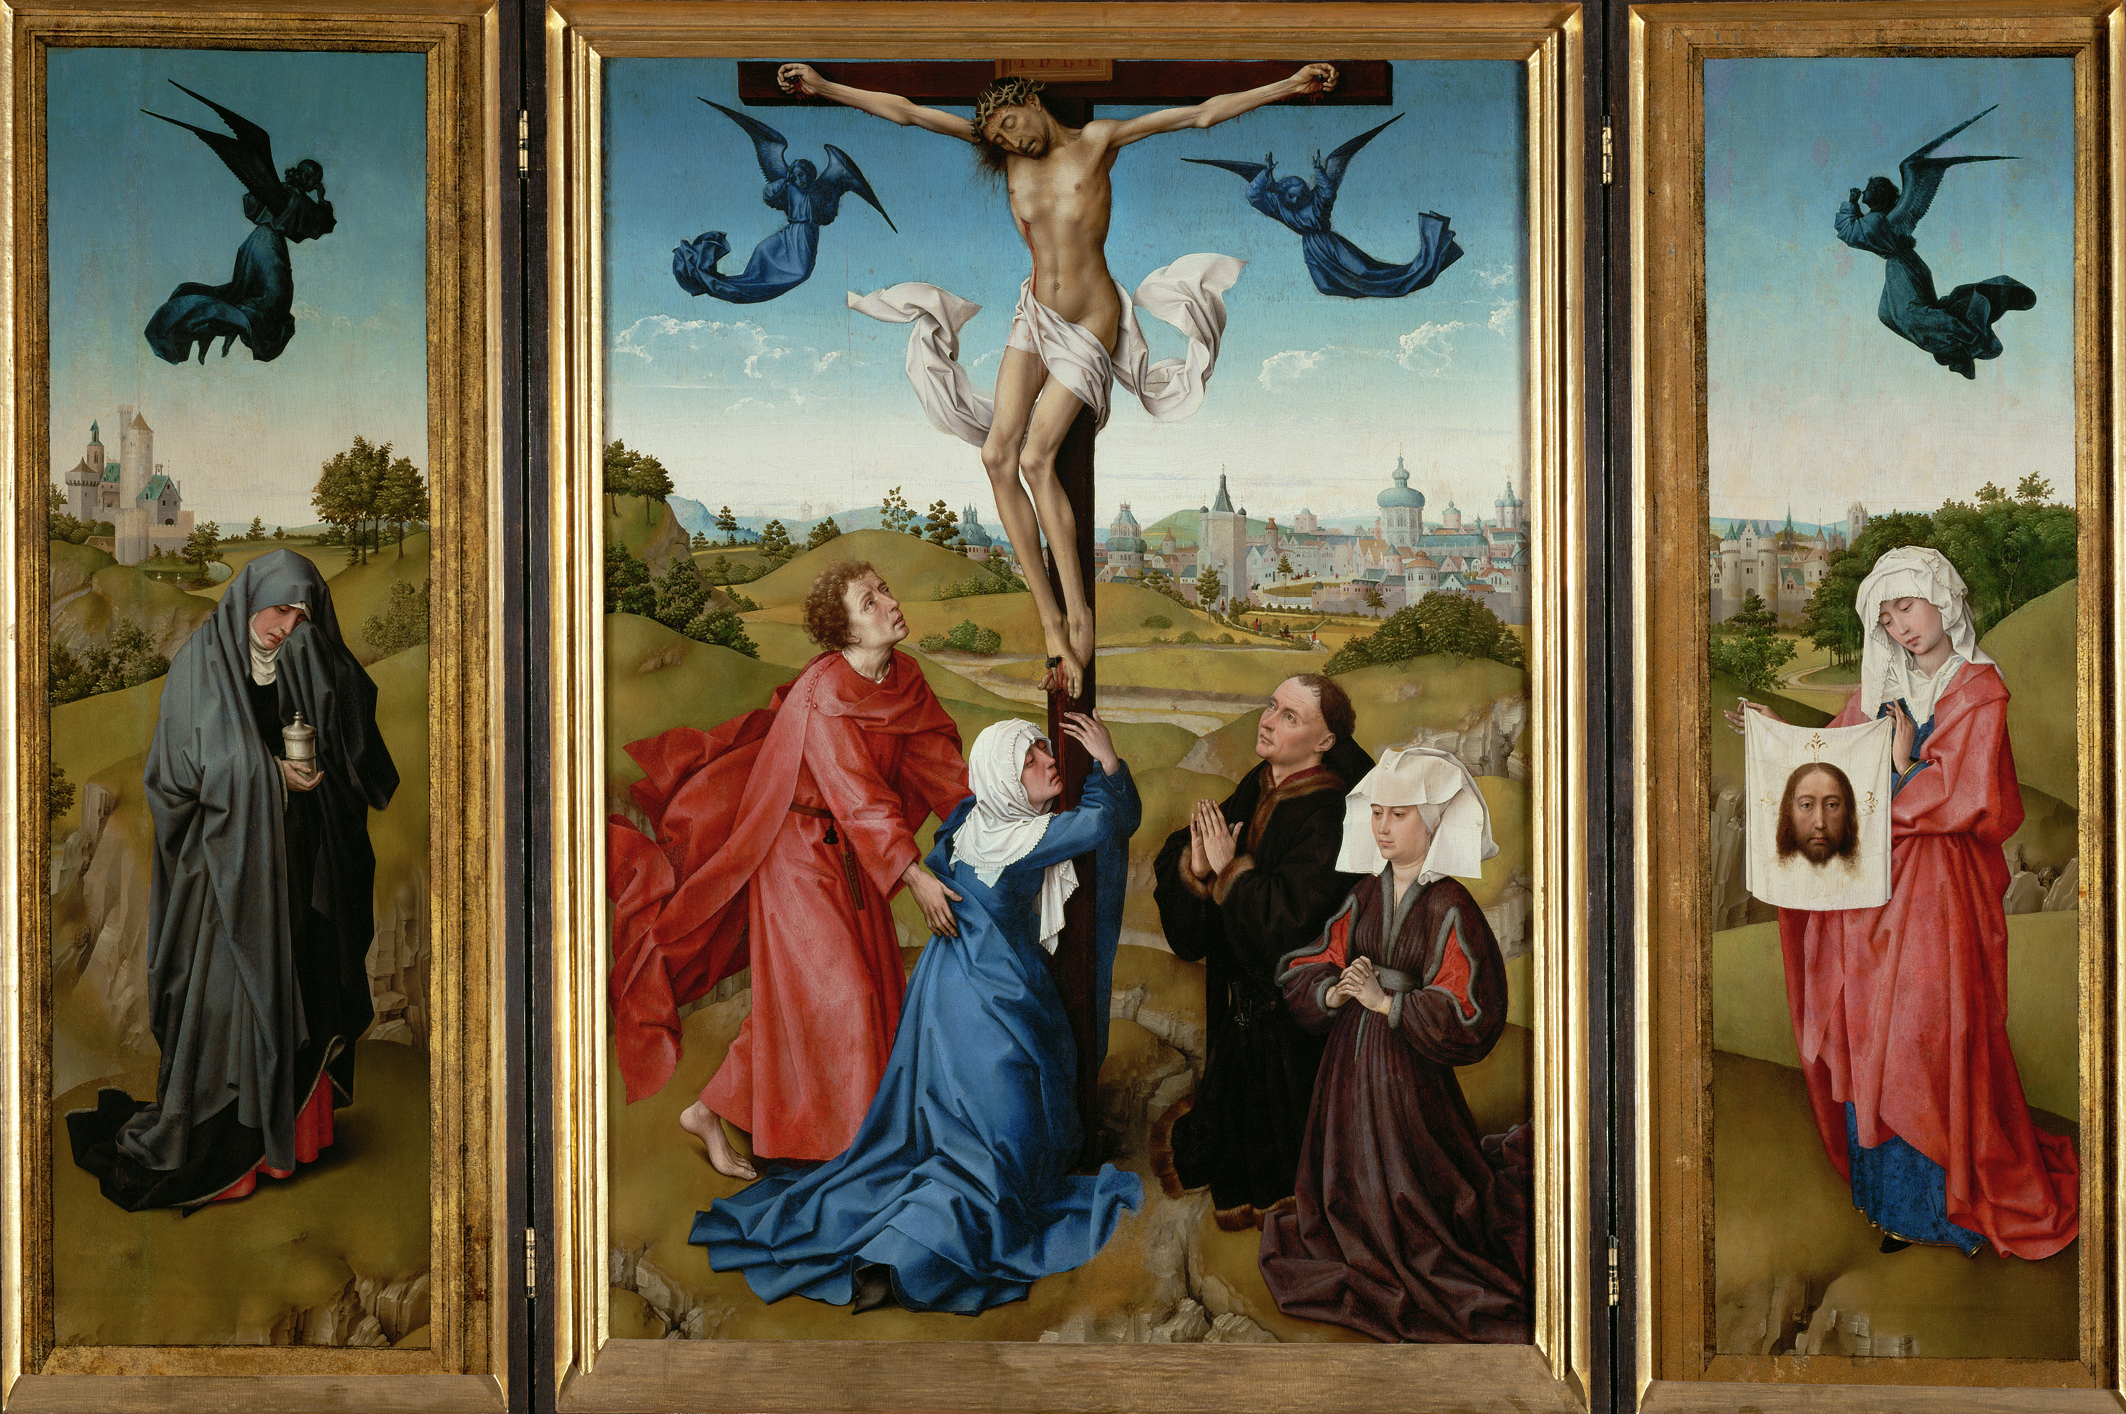 特裏皮奇：受難 by Rogier van der Weyden - 1443/45 - 中央畫板 96 x 69 cm,側翼: 每個101 x 35 cm 